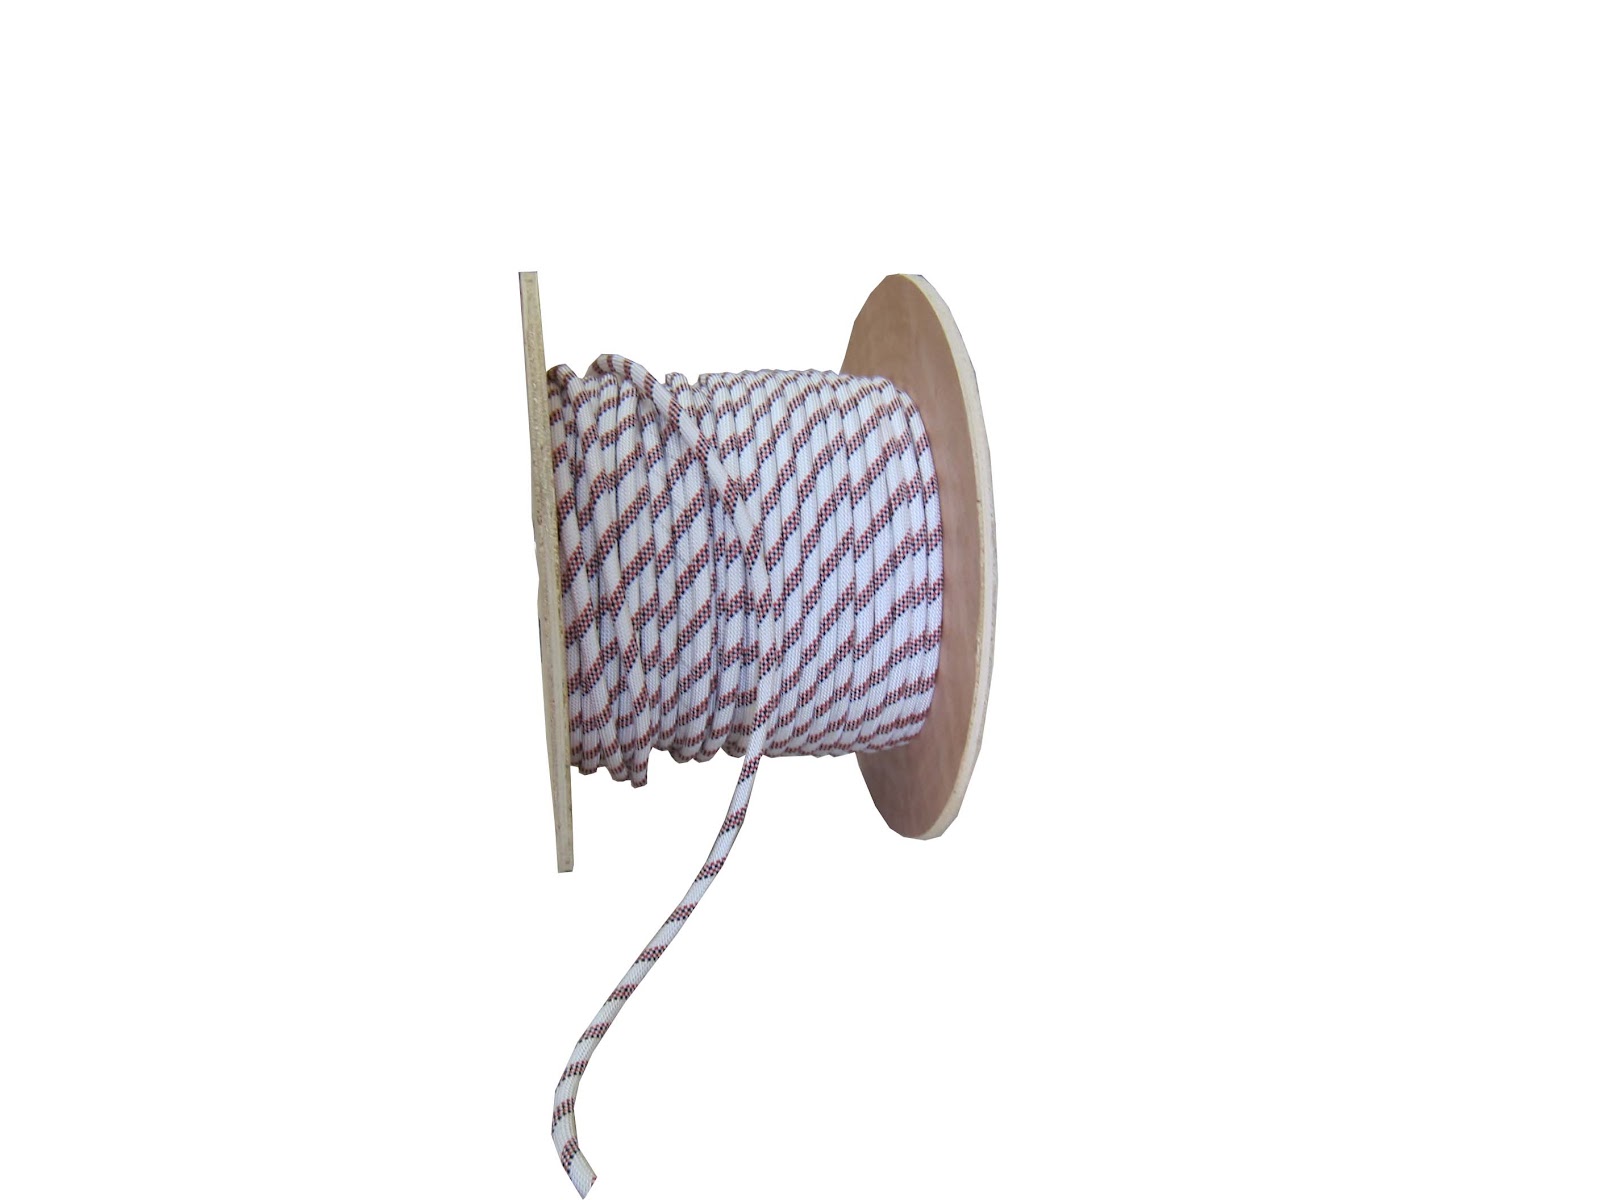  Nylon Braided Rope